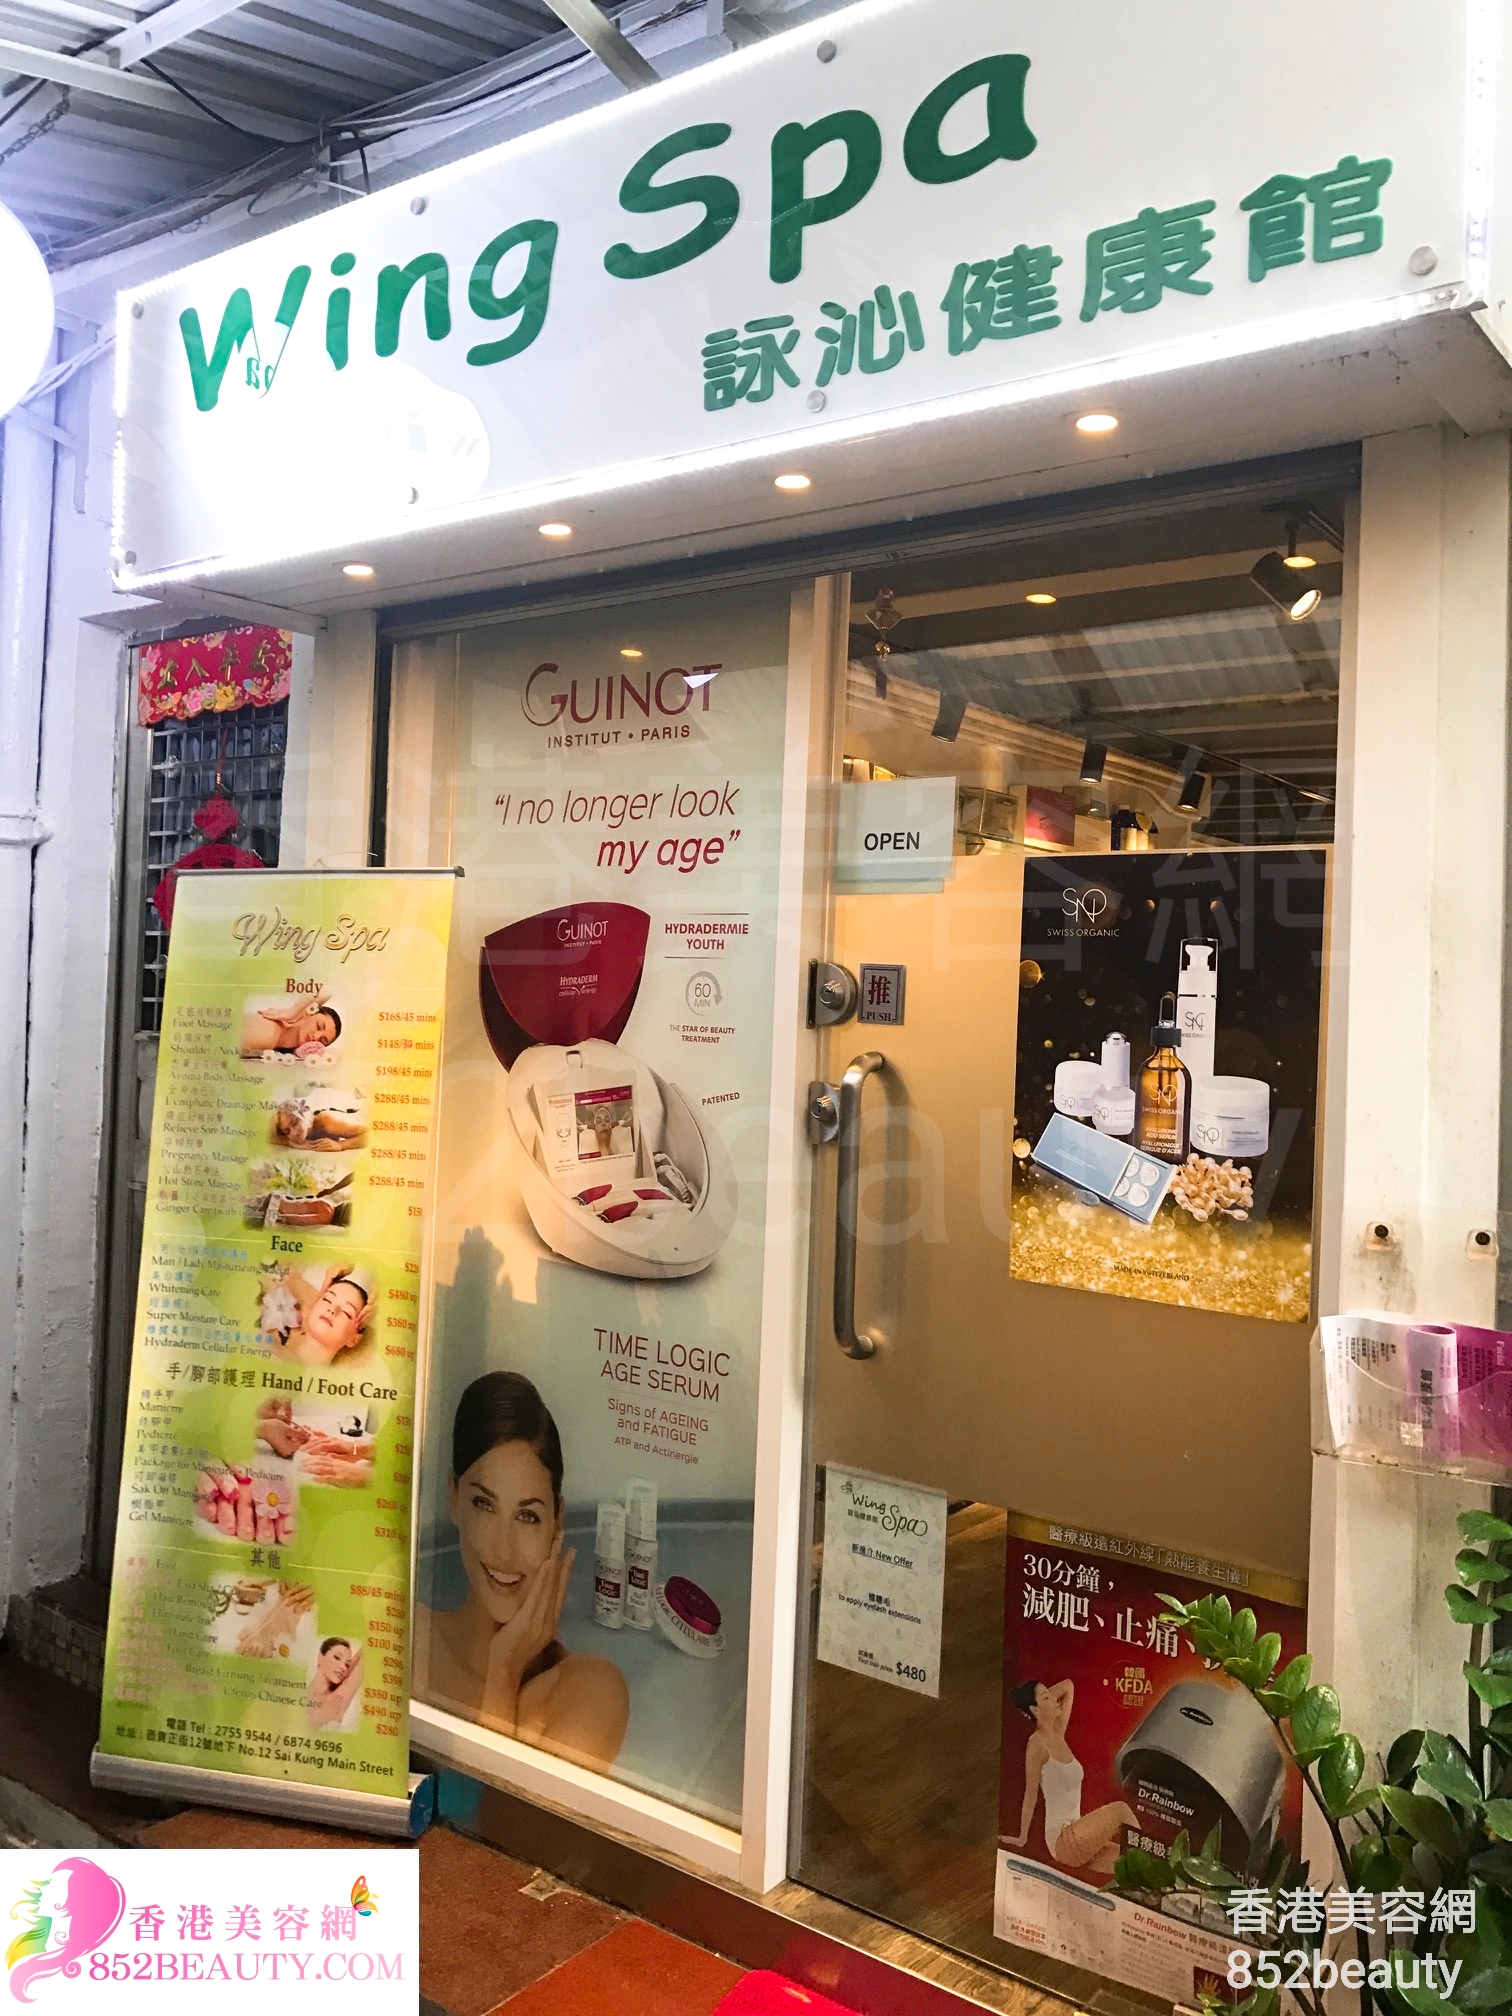 香港美容網 Hong Kong Beauty Salon 美容院 / 美容師: Wing Spa 詠沁健康館